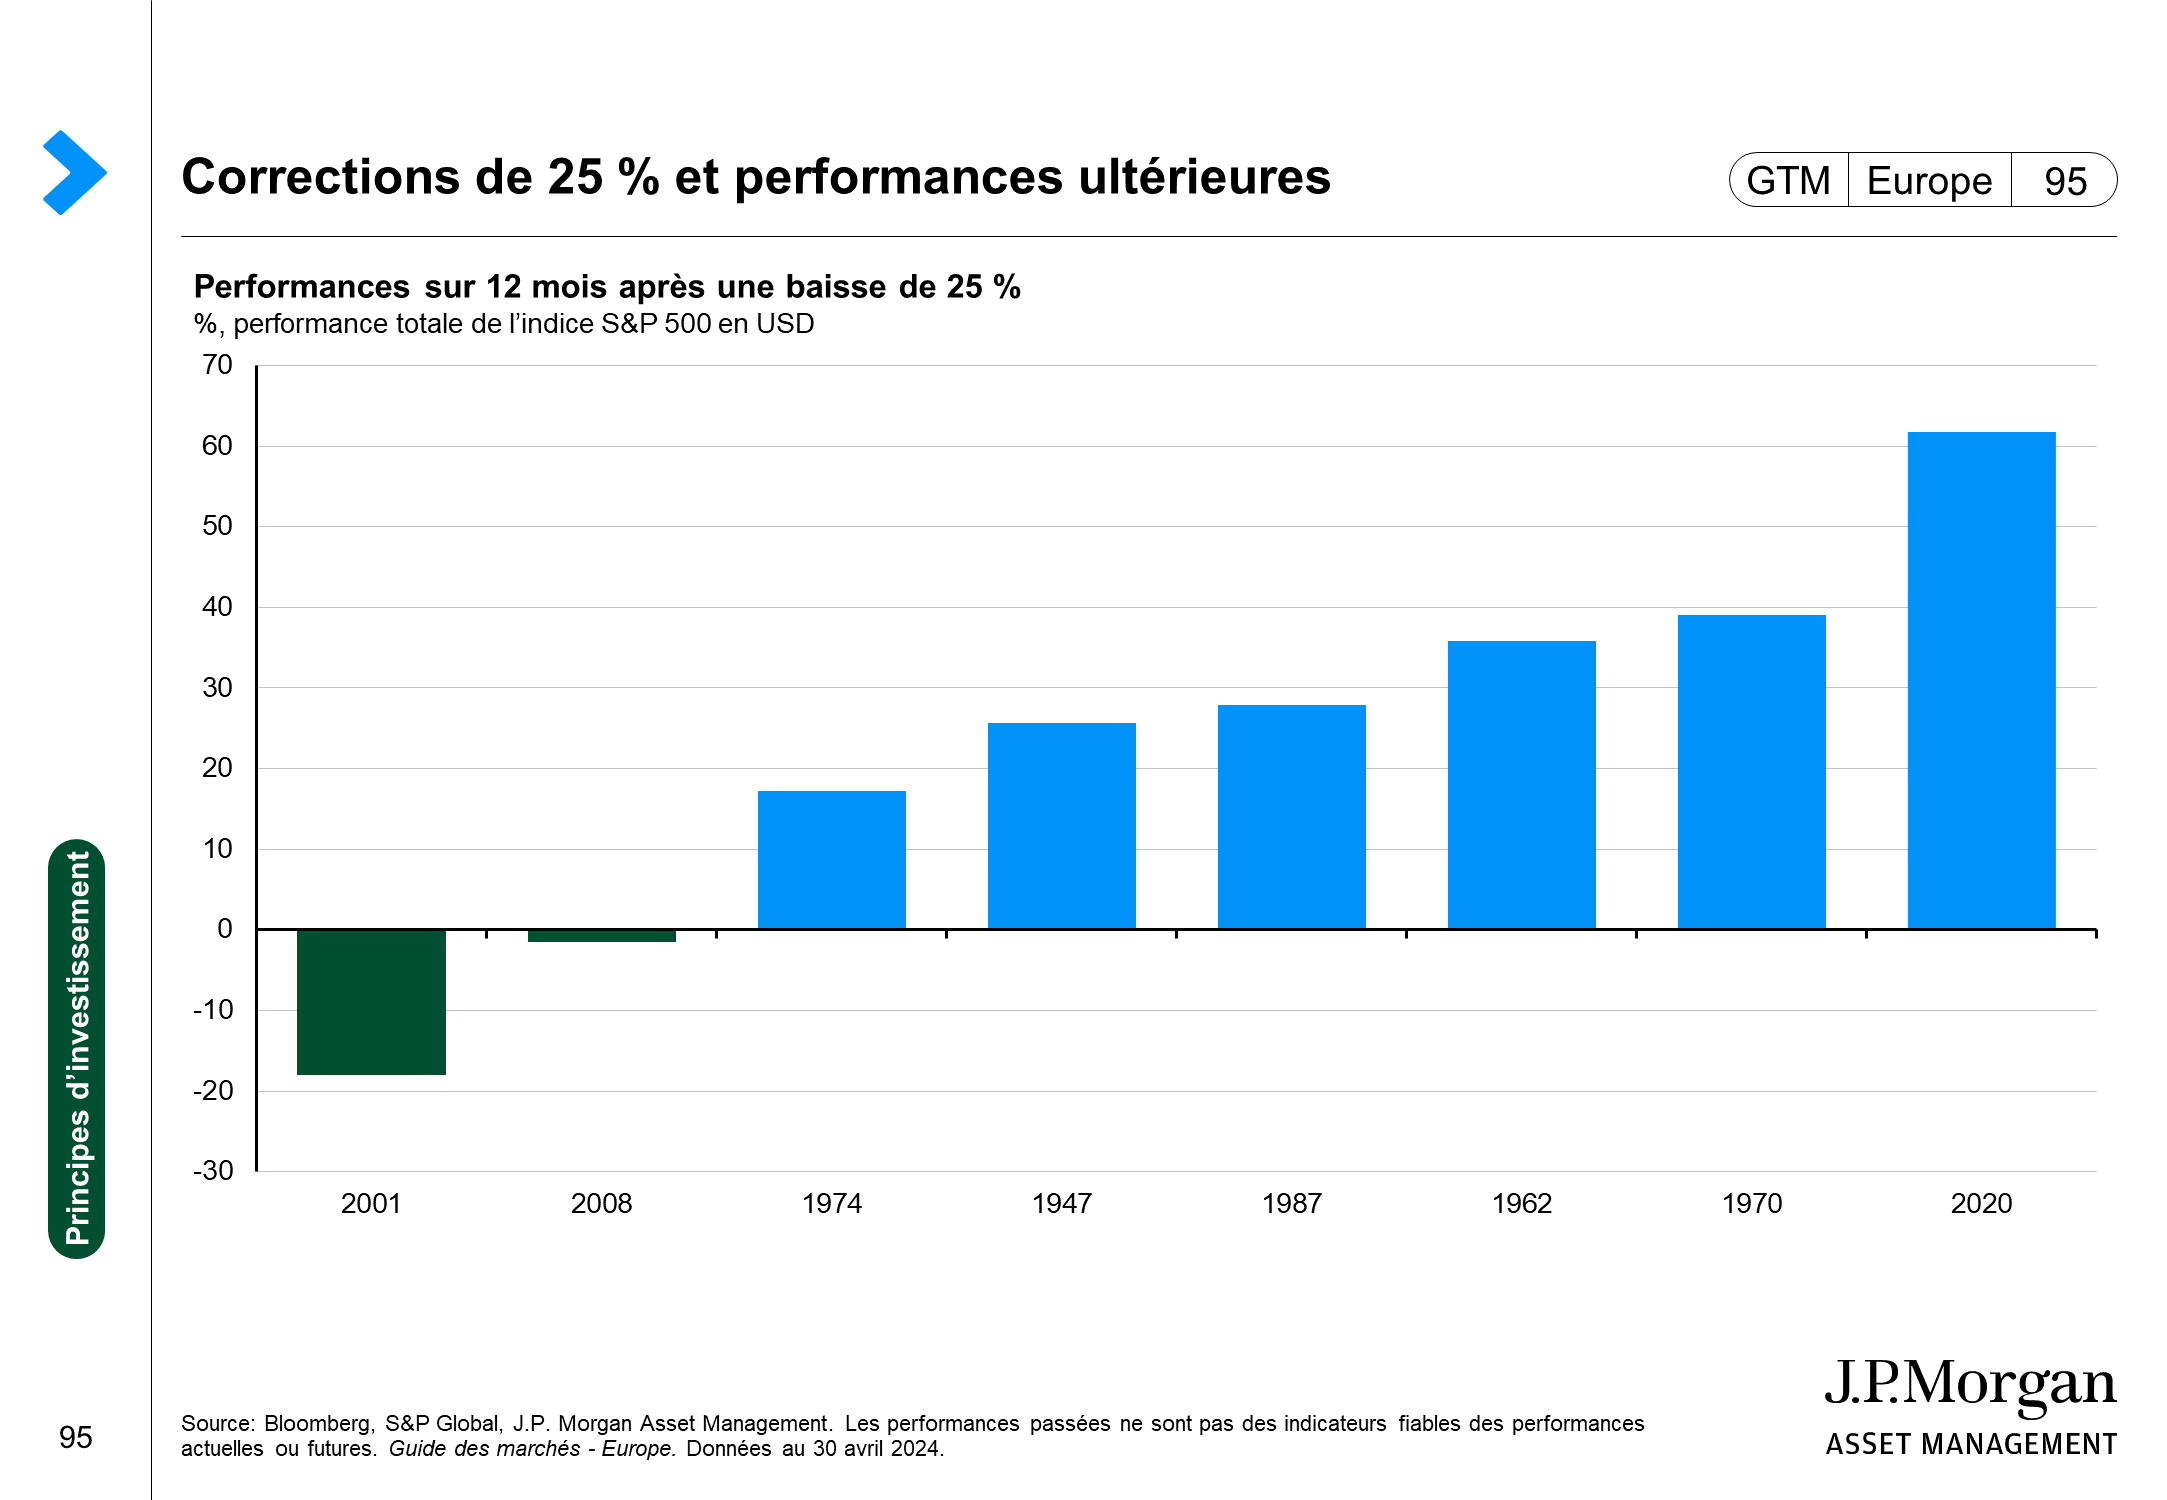 Performances des actifs aux États-Unis en fonction de leur durée de détention